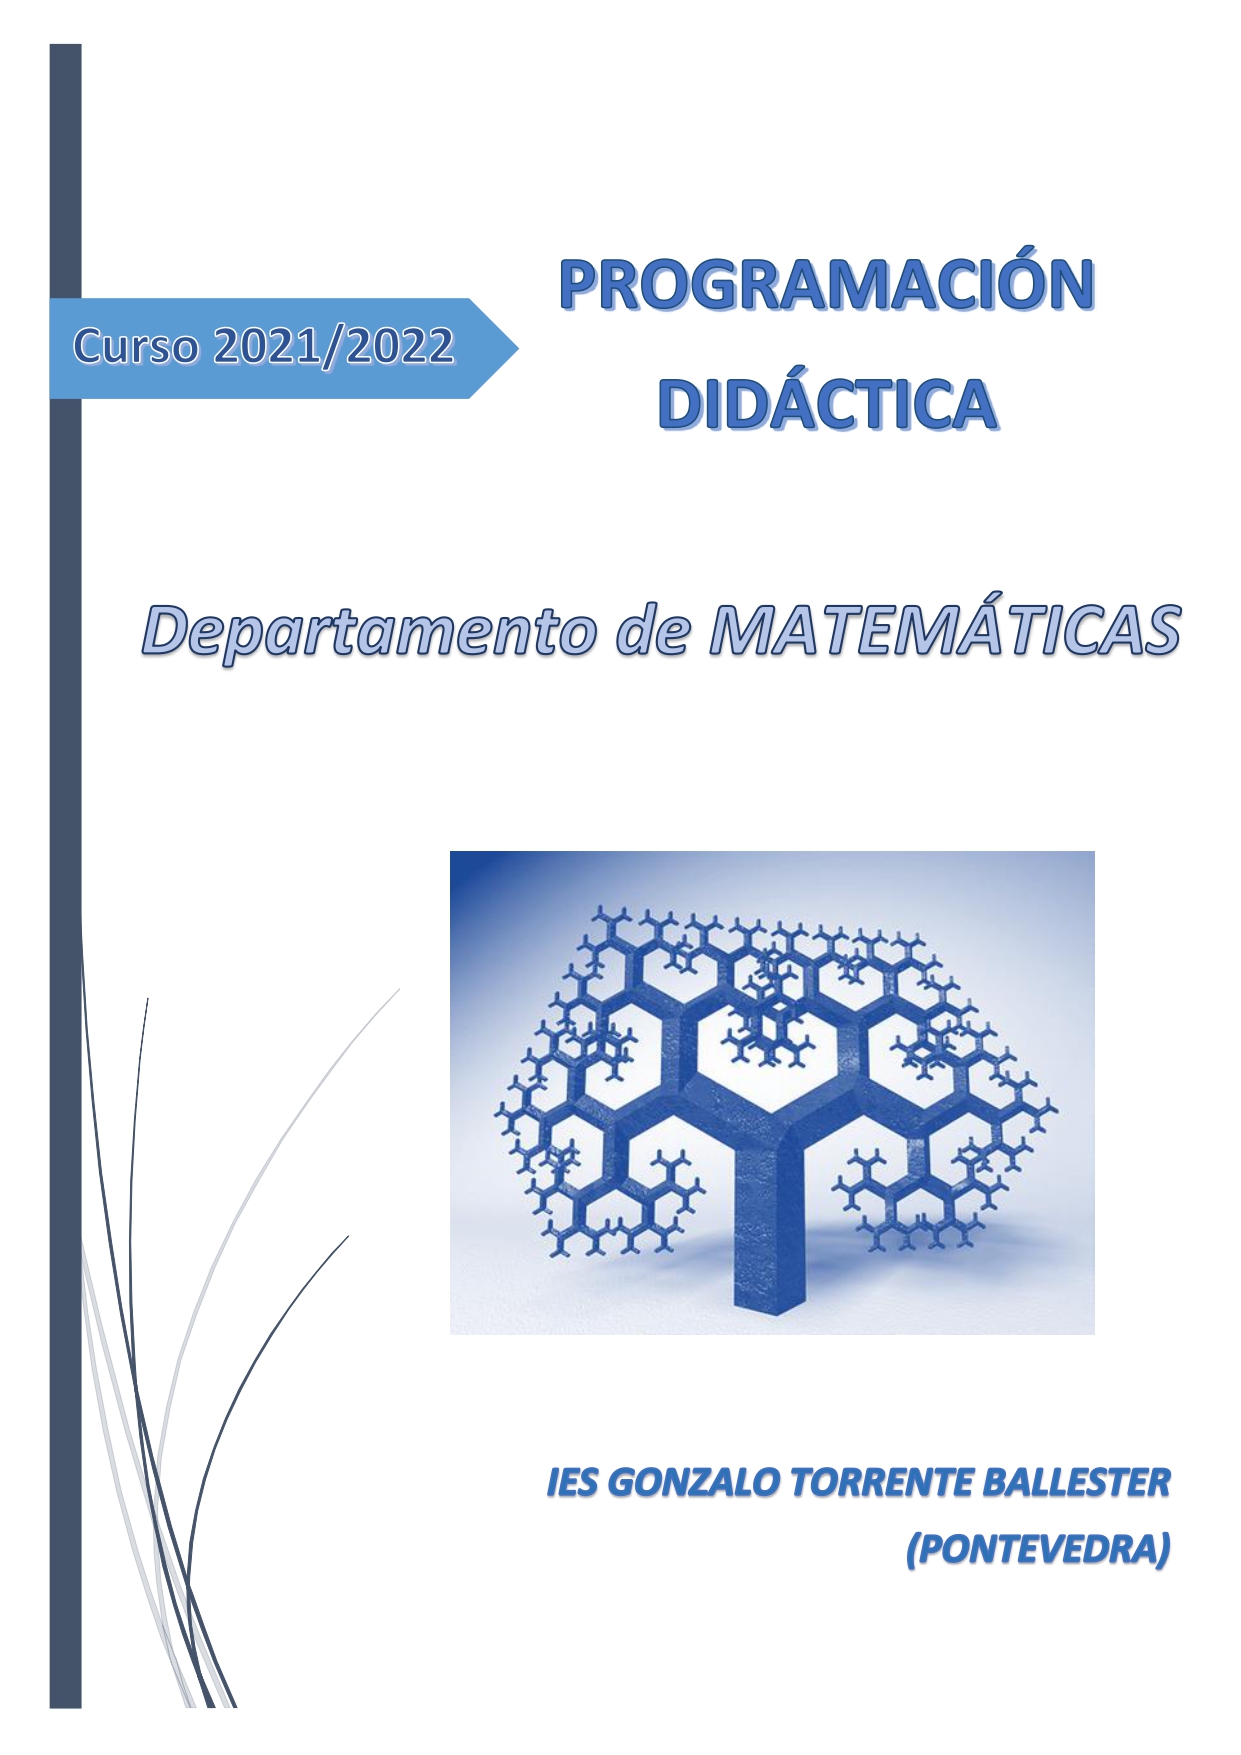 Programación Didáctica Matemáticas (2021/2022)